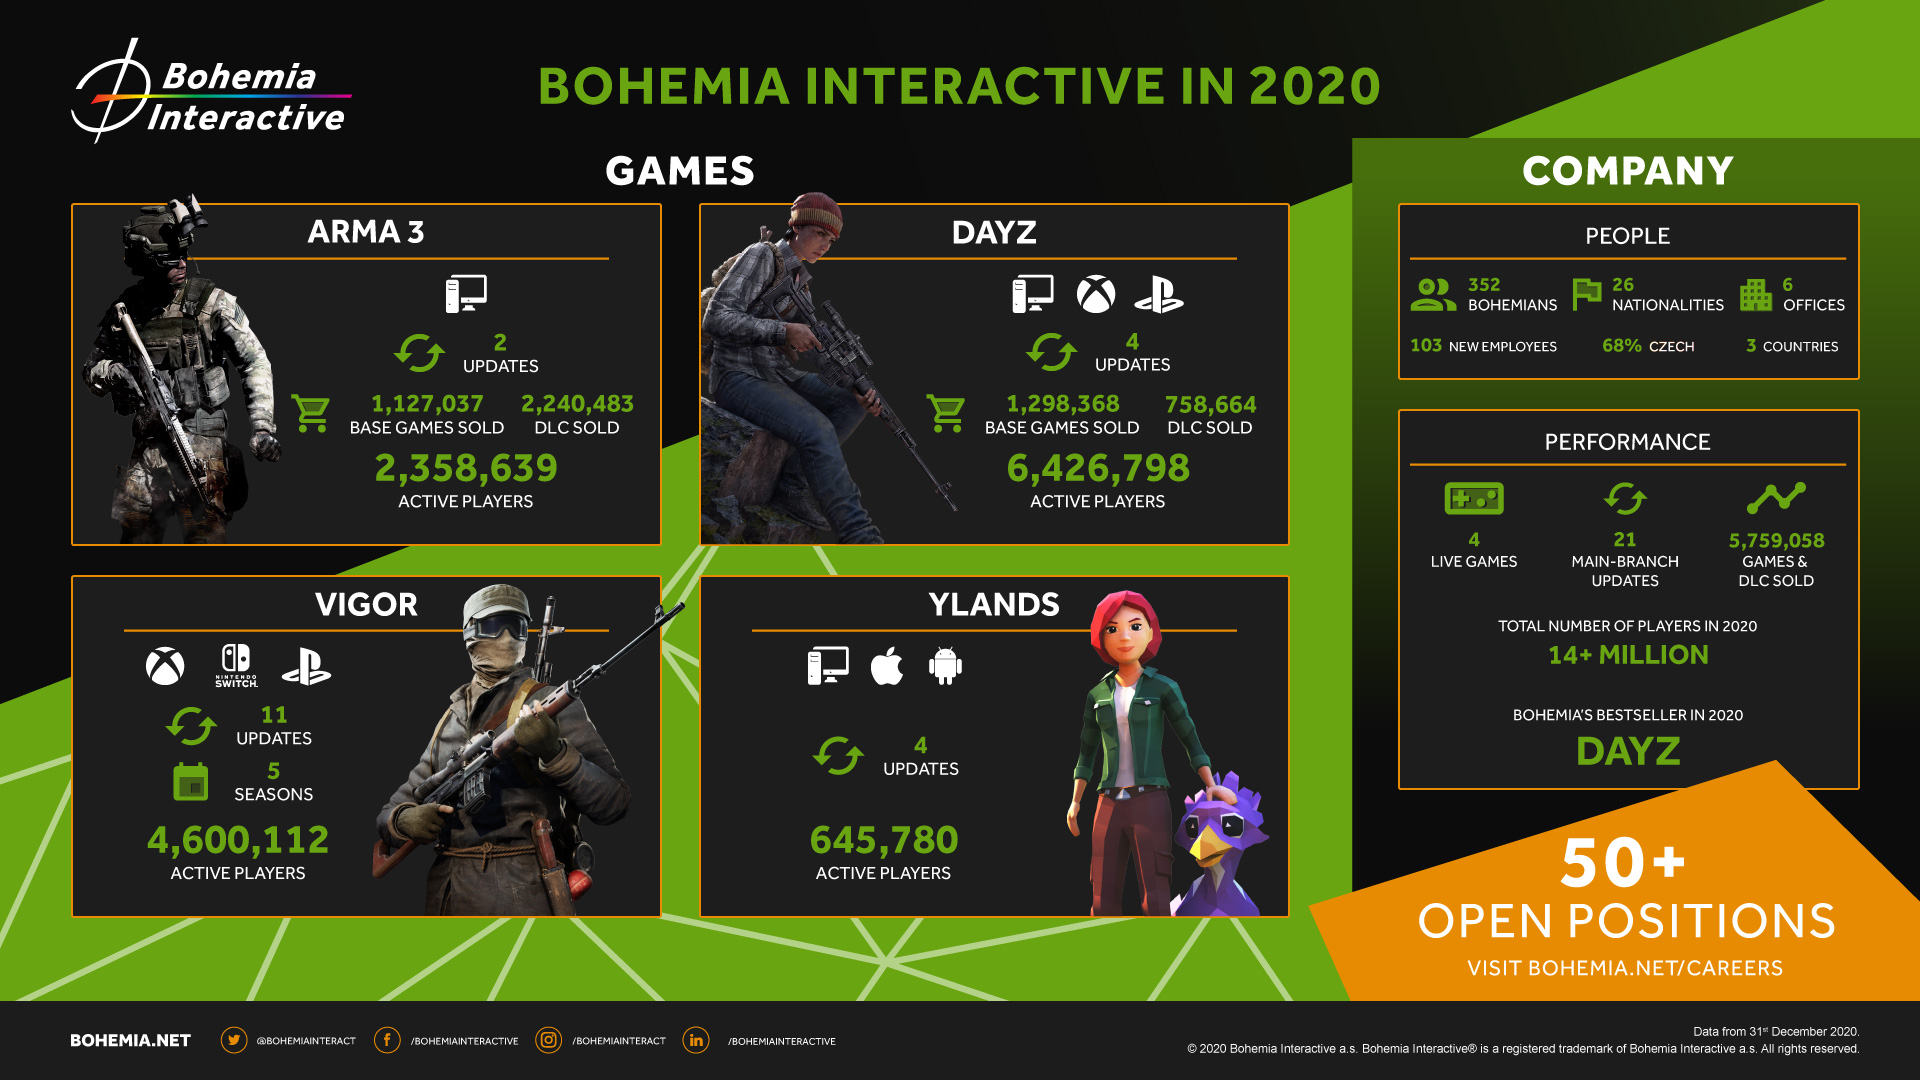 Bohemia in 2020